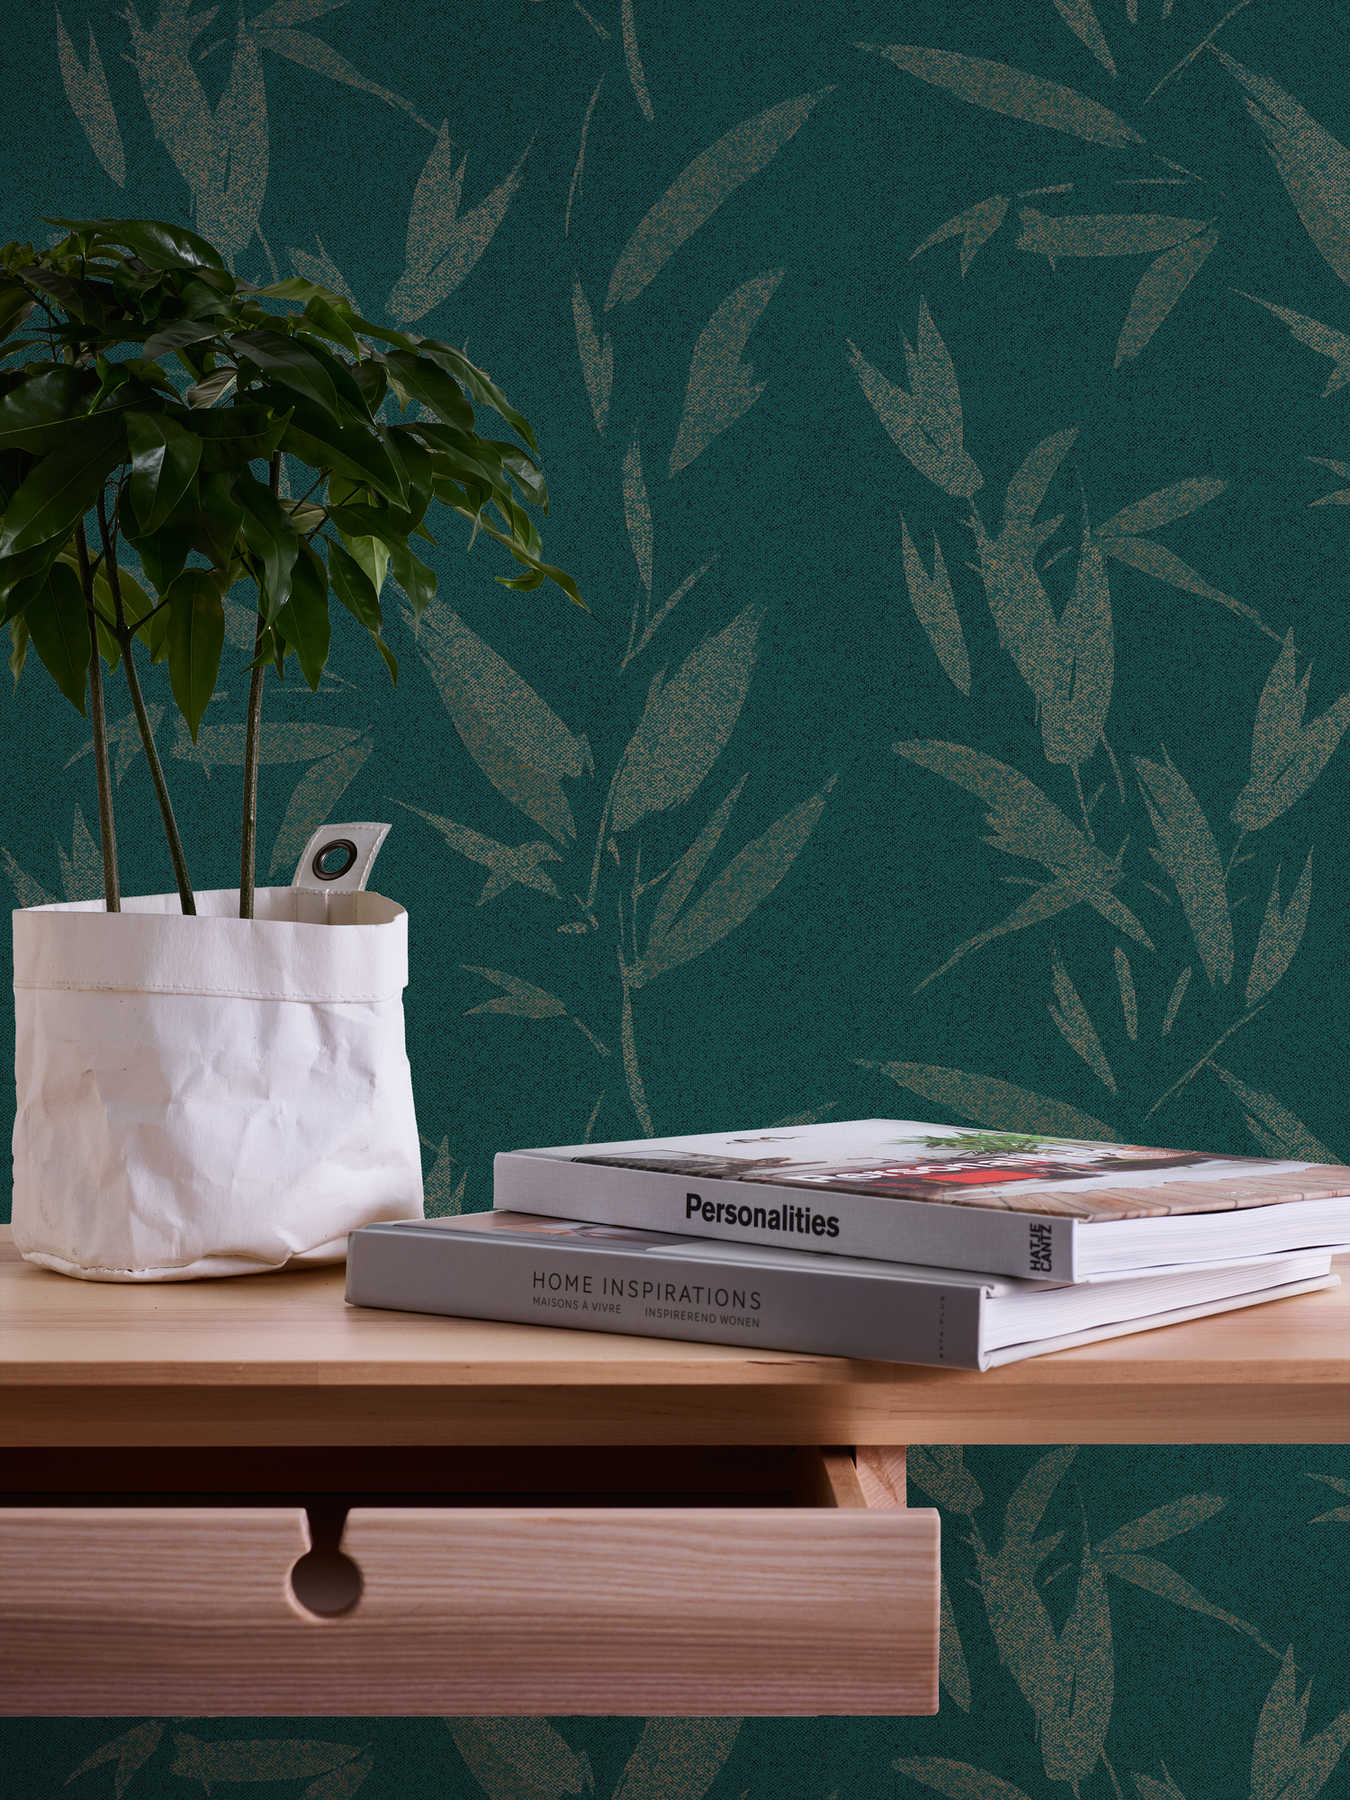             Blätter Tapete abstrakt mit Textiloptik – Grün, Beige
        